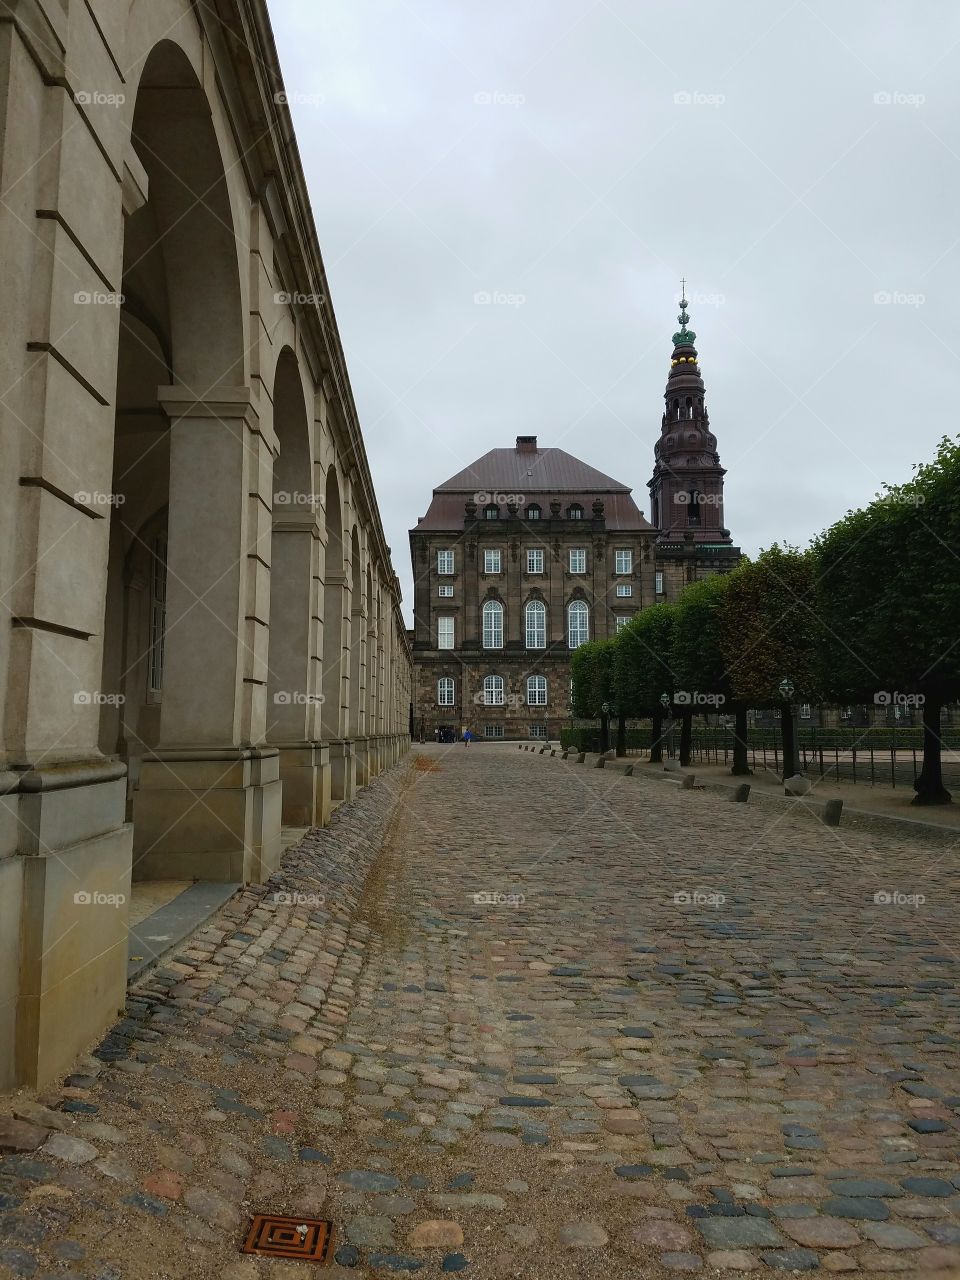 Christiansborg Palace